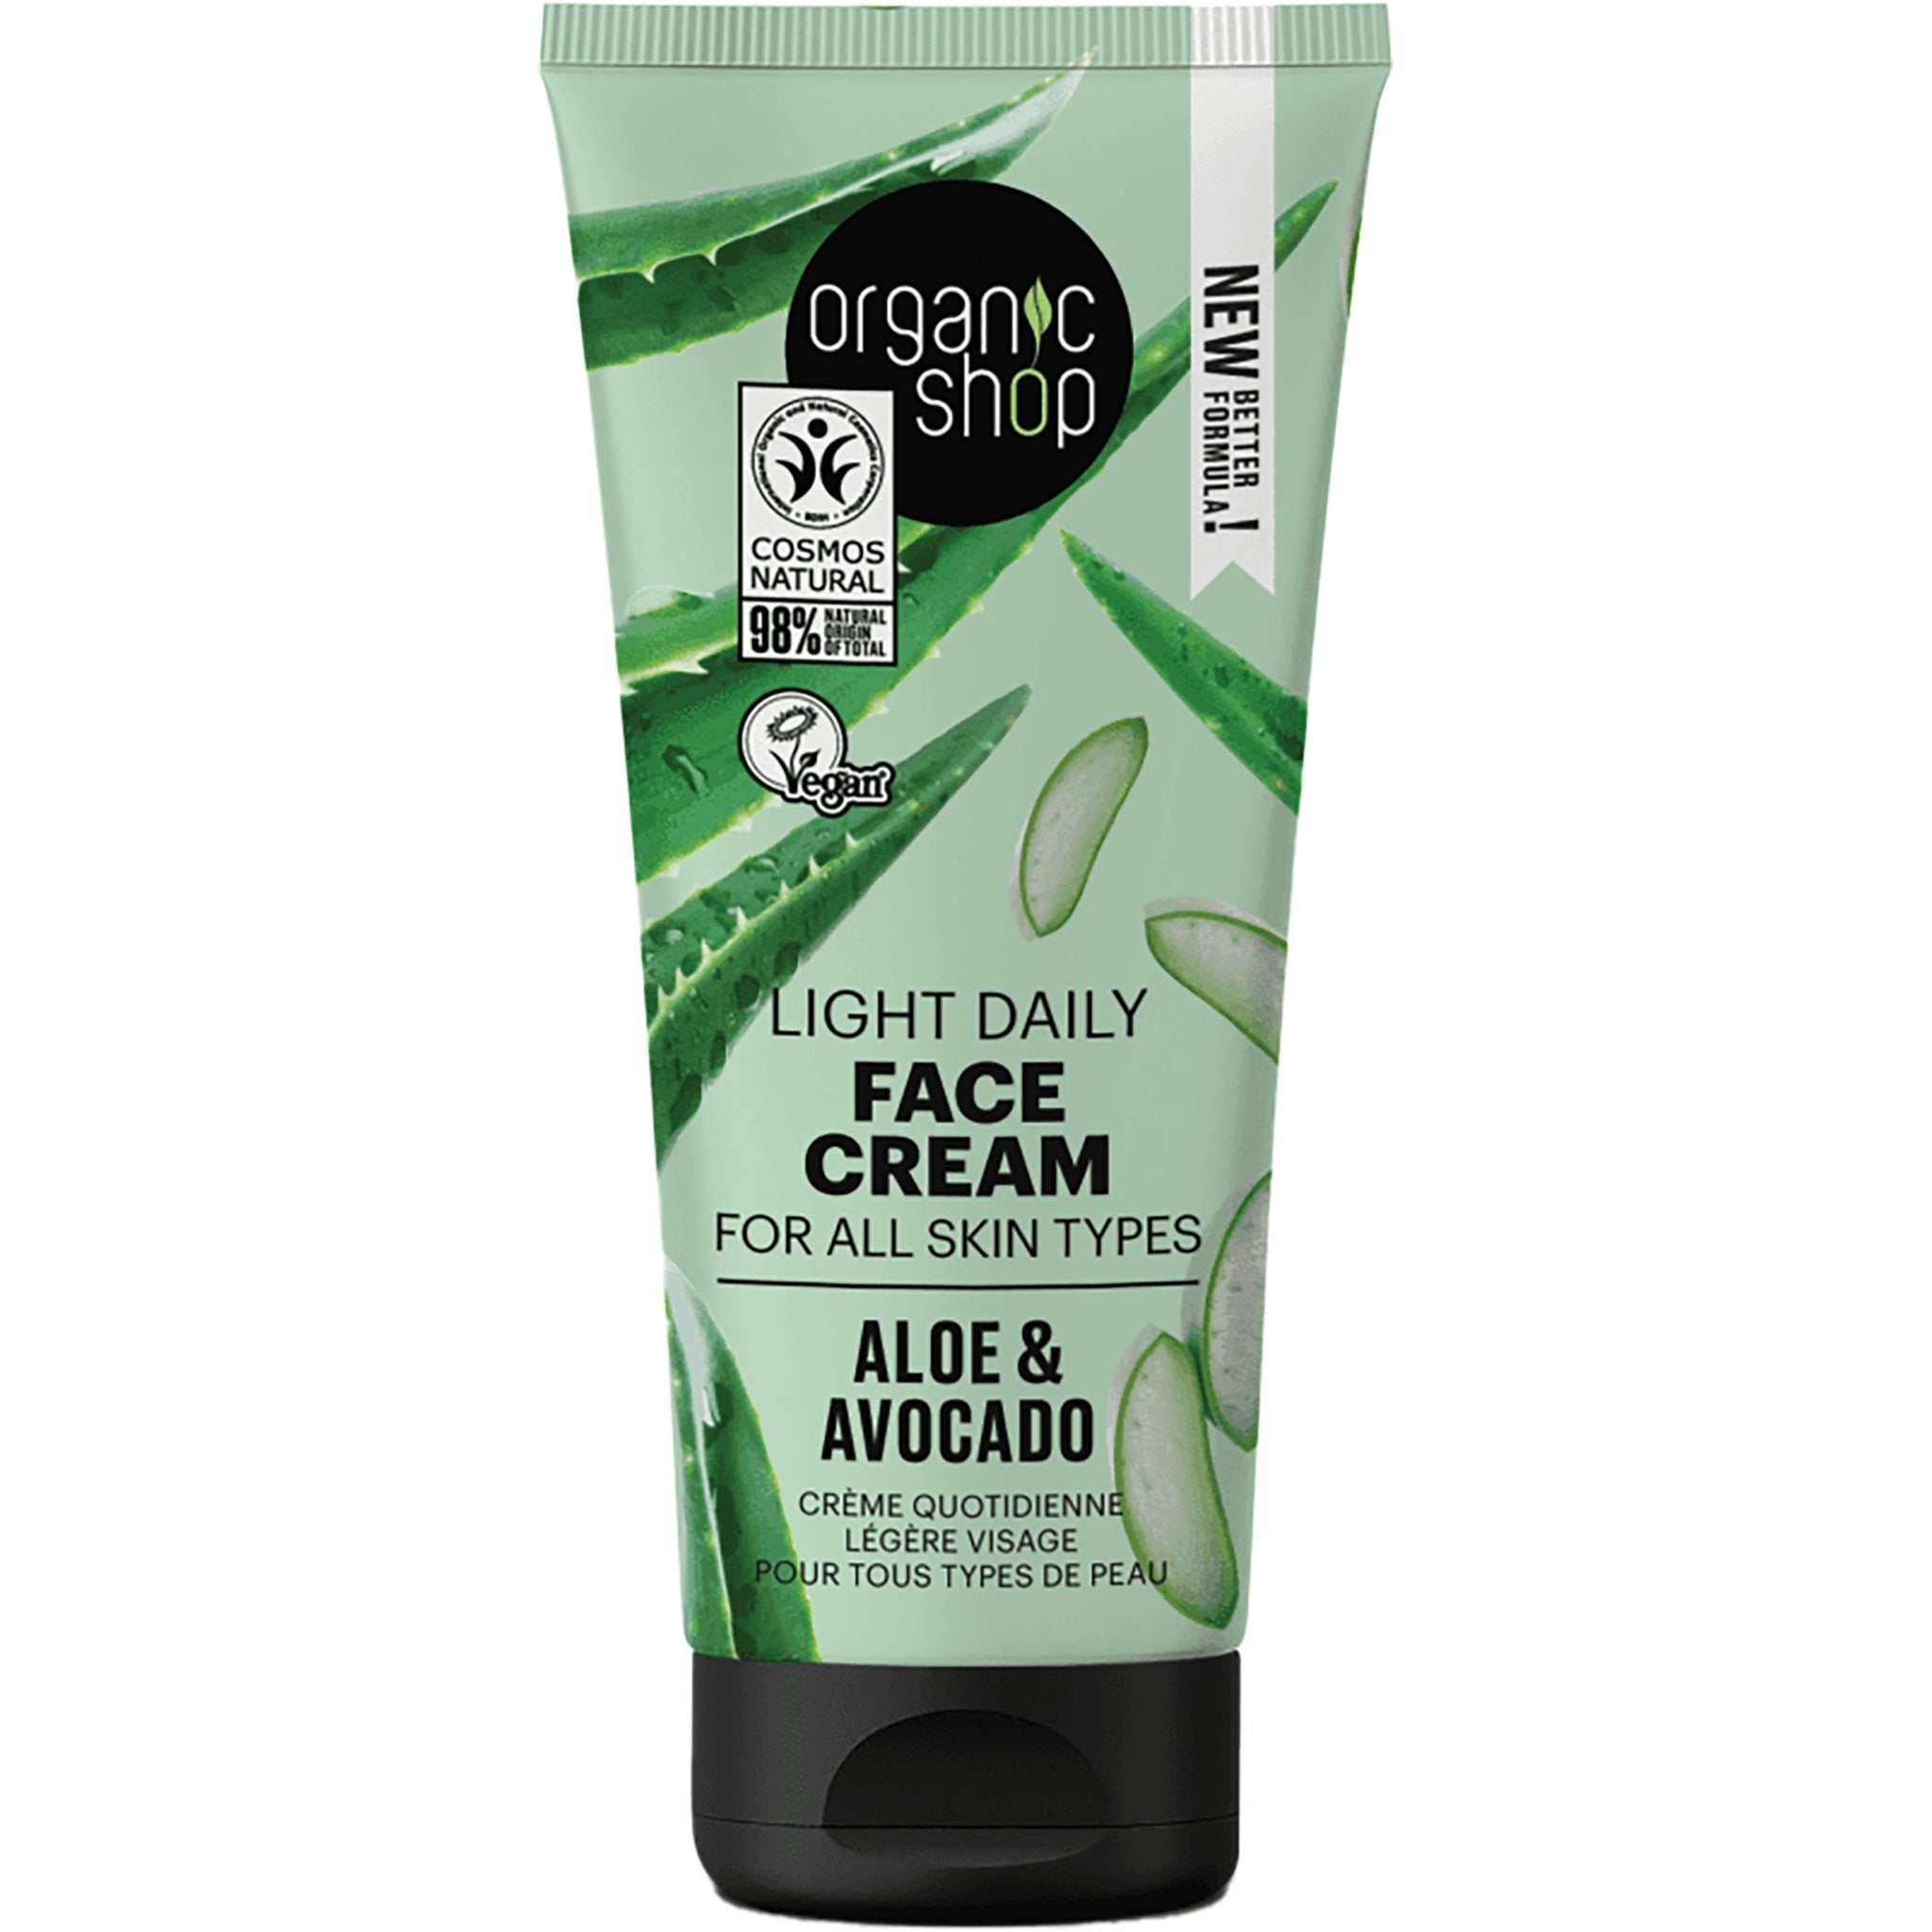 NEW Aloe & Avocado Light Daily Face Cream - mypure.co.uk